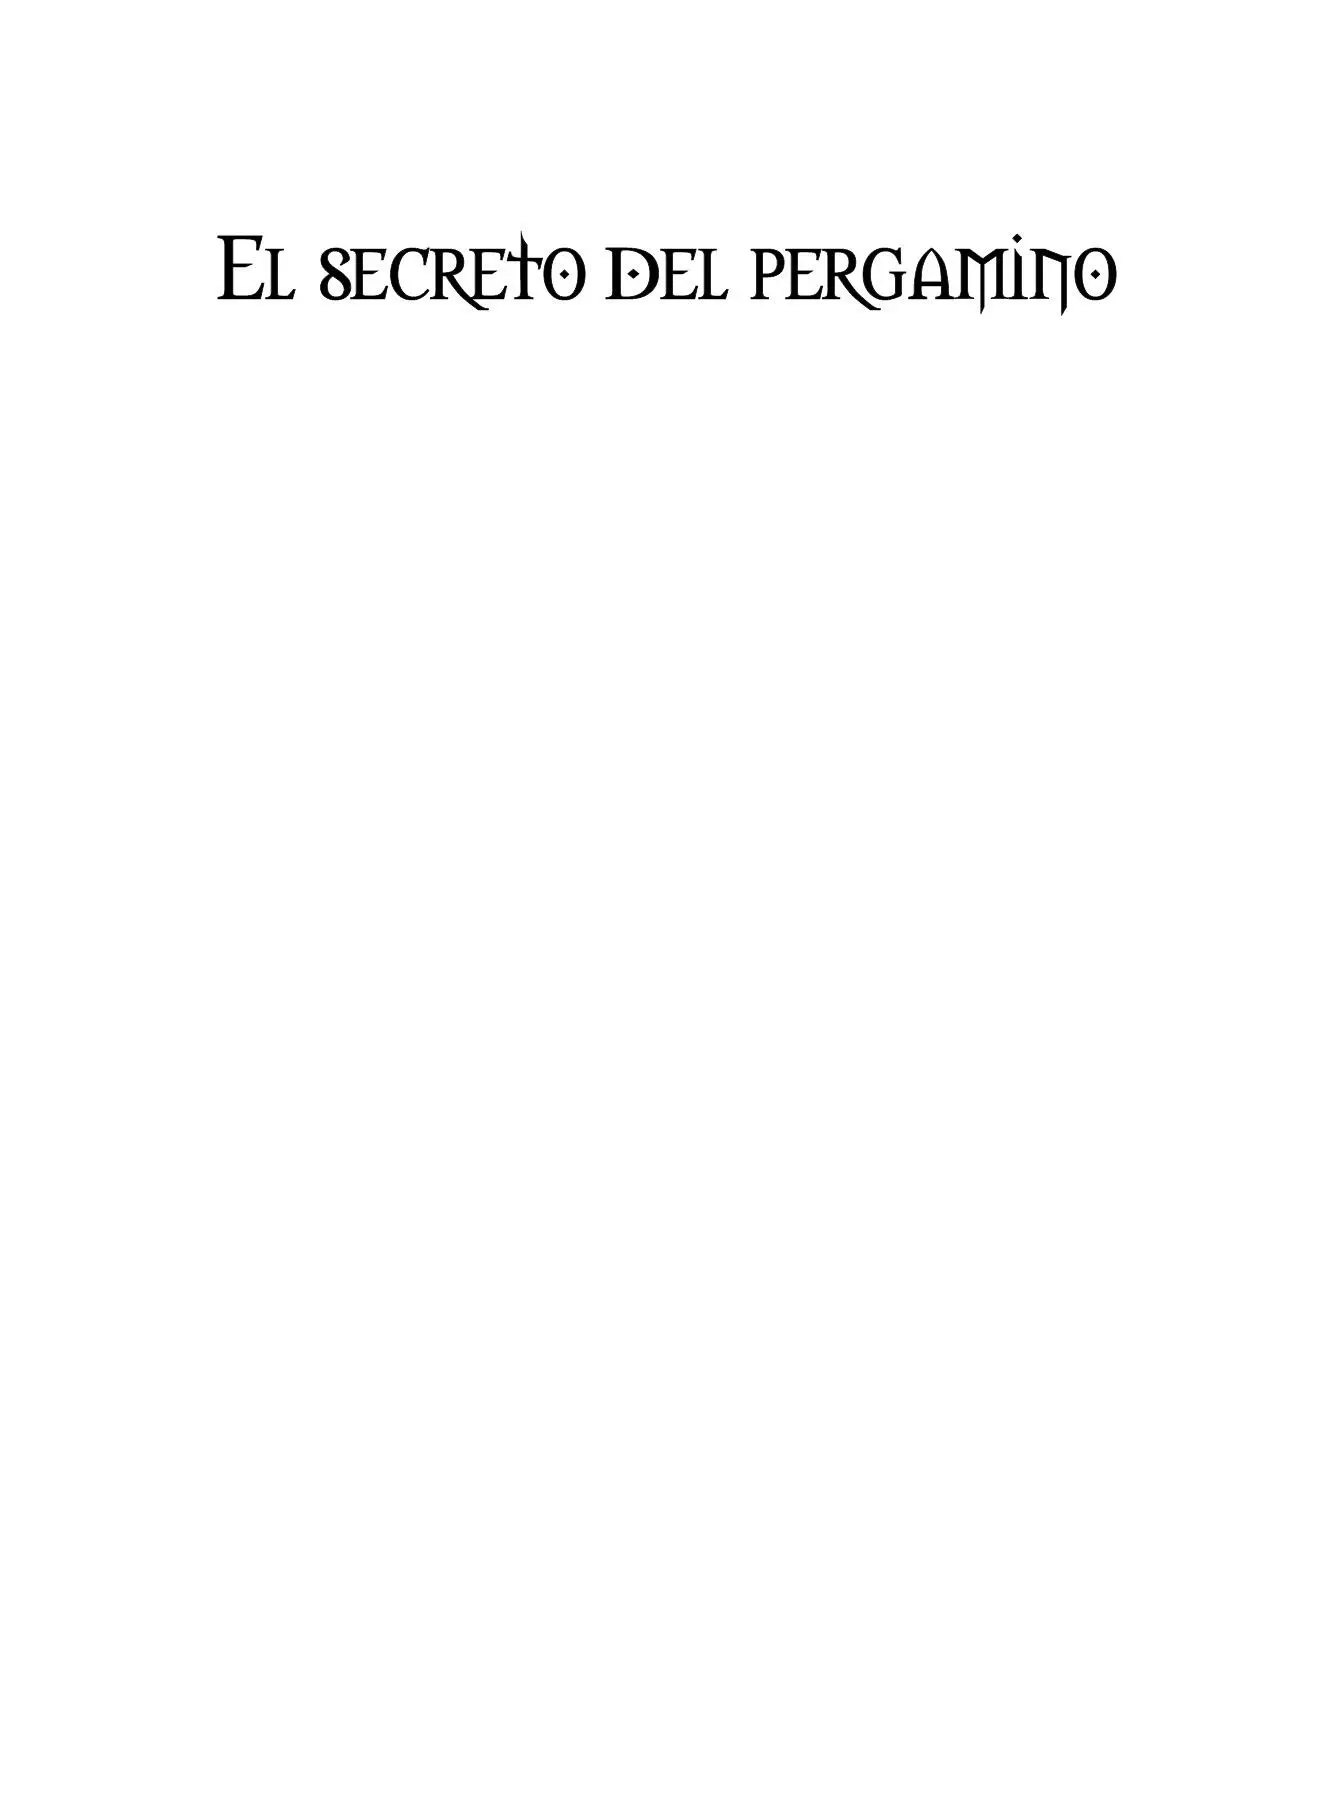 El secreto del pergamino 2004 Xavier Musquera 2008 Ediciones Corona - фото 1